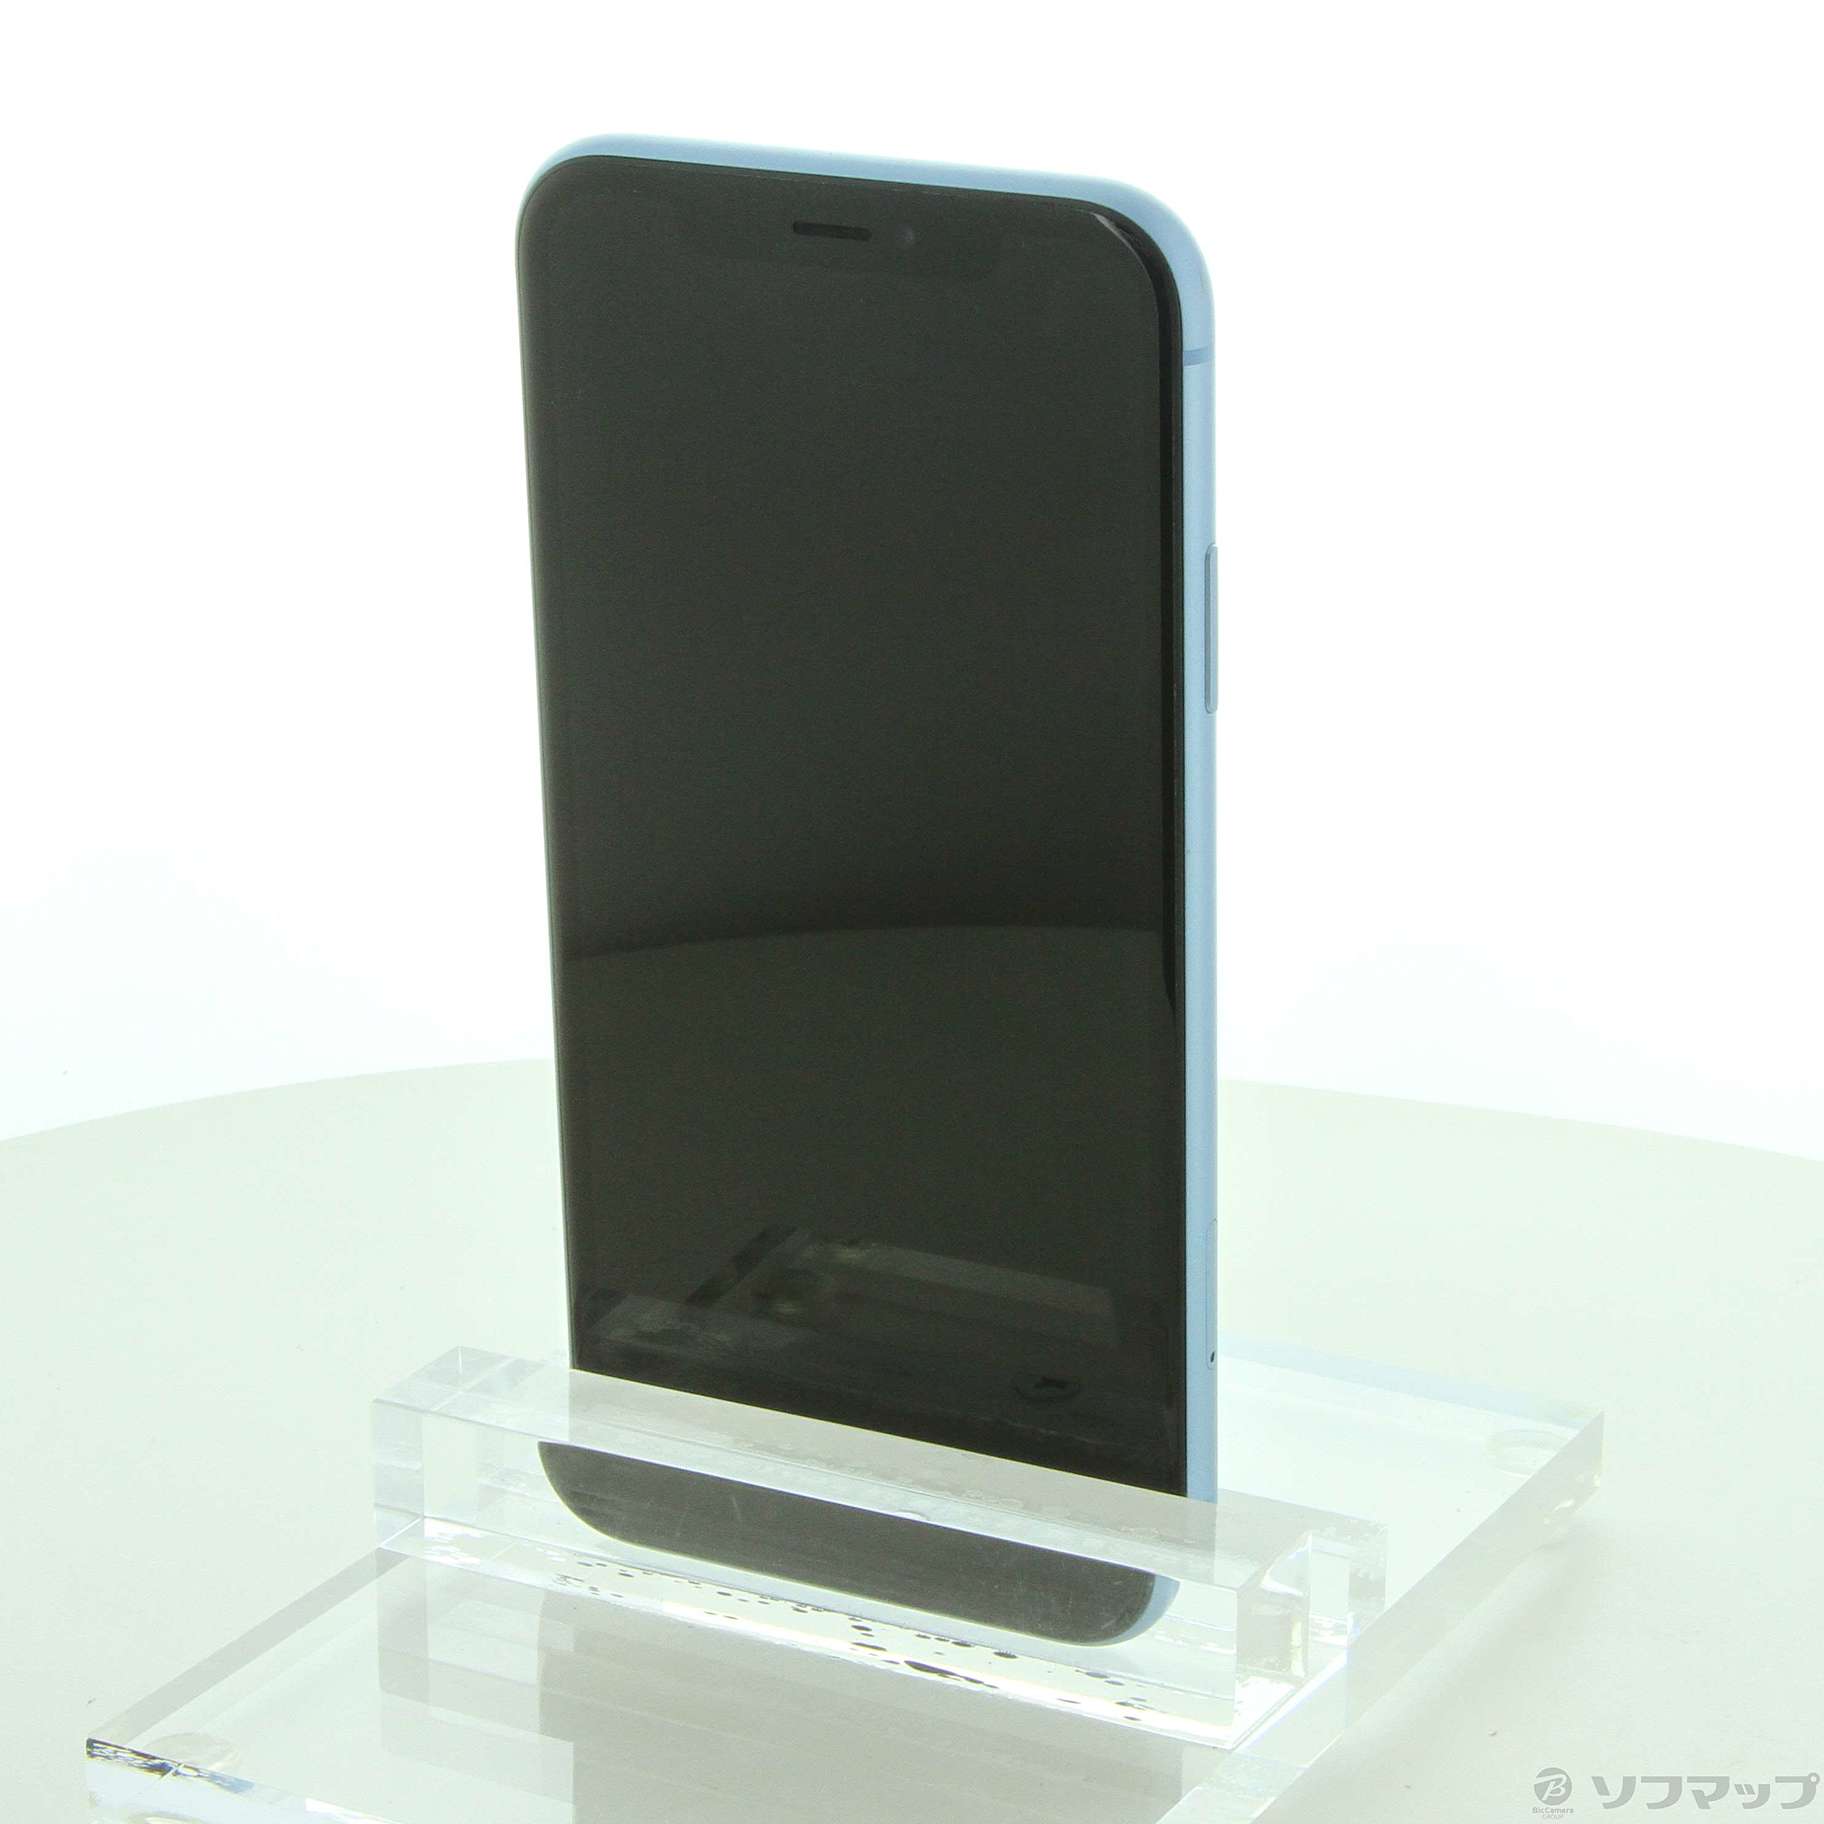 iPhoneXR 64GB BL SIMフリー & Airpods2セット販売 - www.sorbillomenu.com